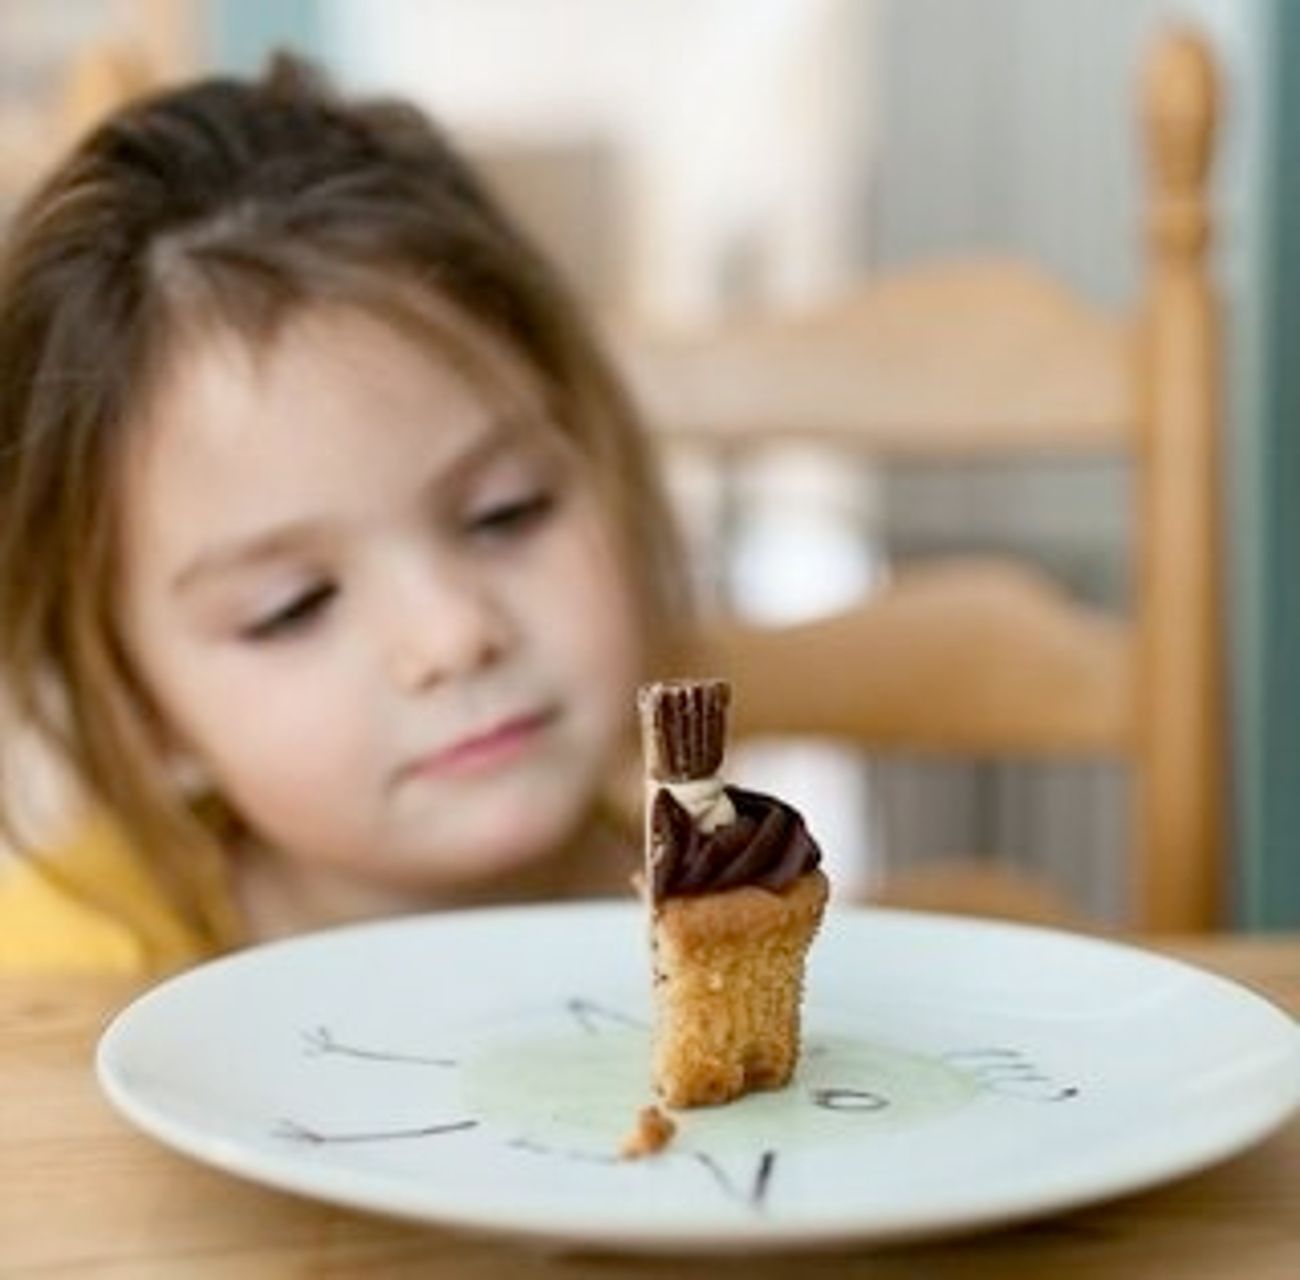 Aumenta la publicidad de alimentos no saludables en horario infantil